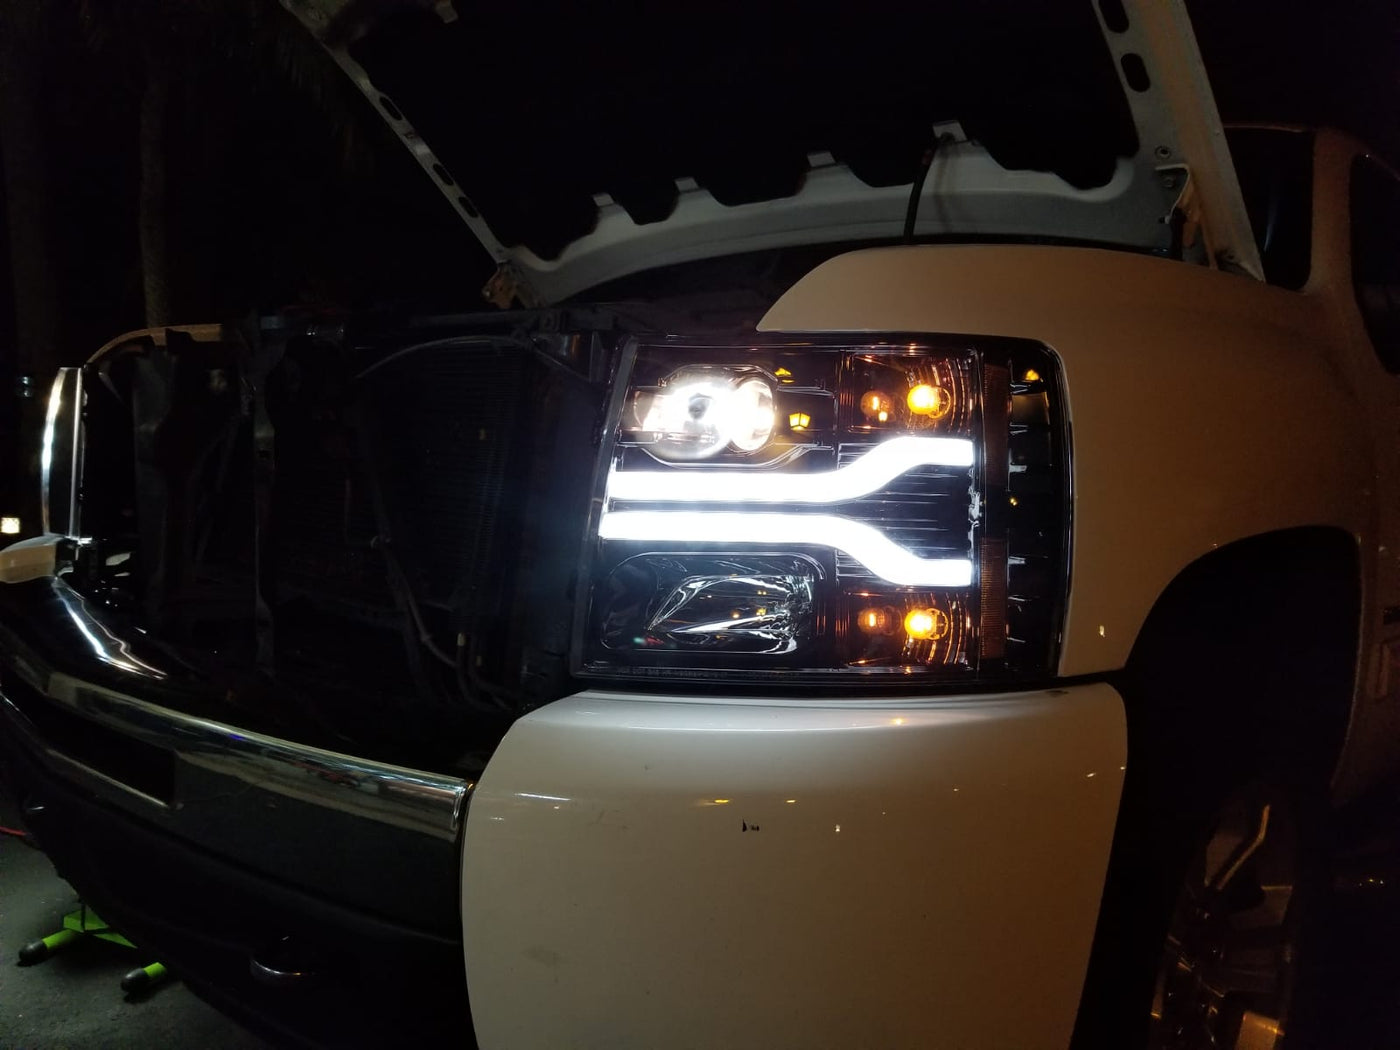 Chevy Silverado Headlights, Silverado Projector Headlights, Silverado 07-13 Headlights, Smoked/Black Headlights, Recon Projector Headlights 